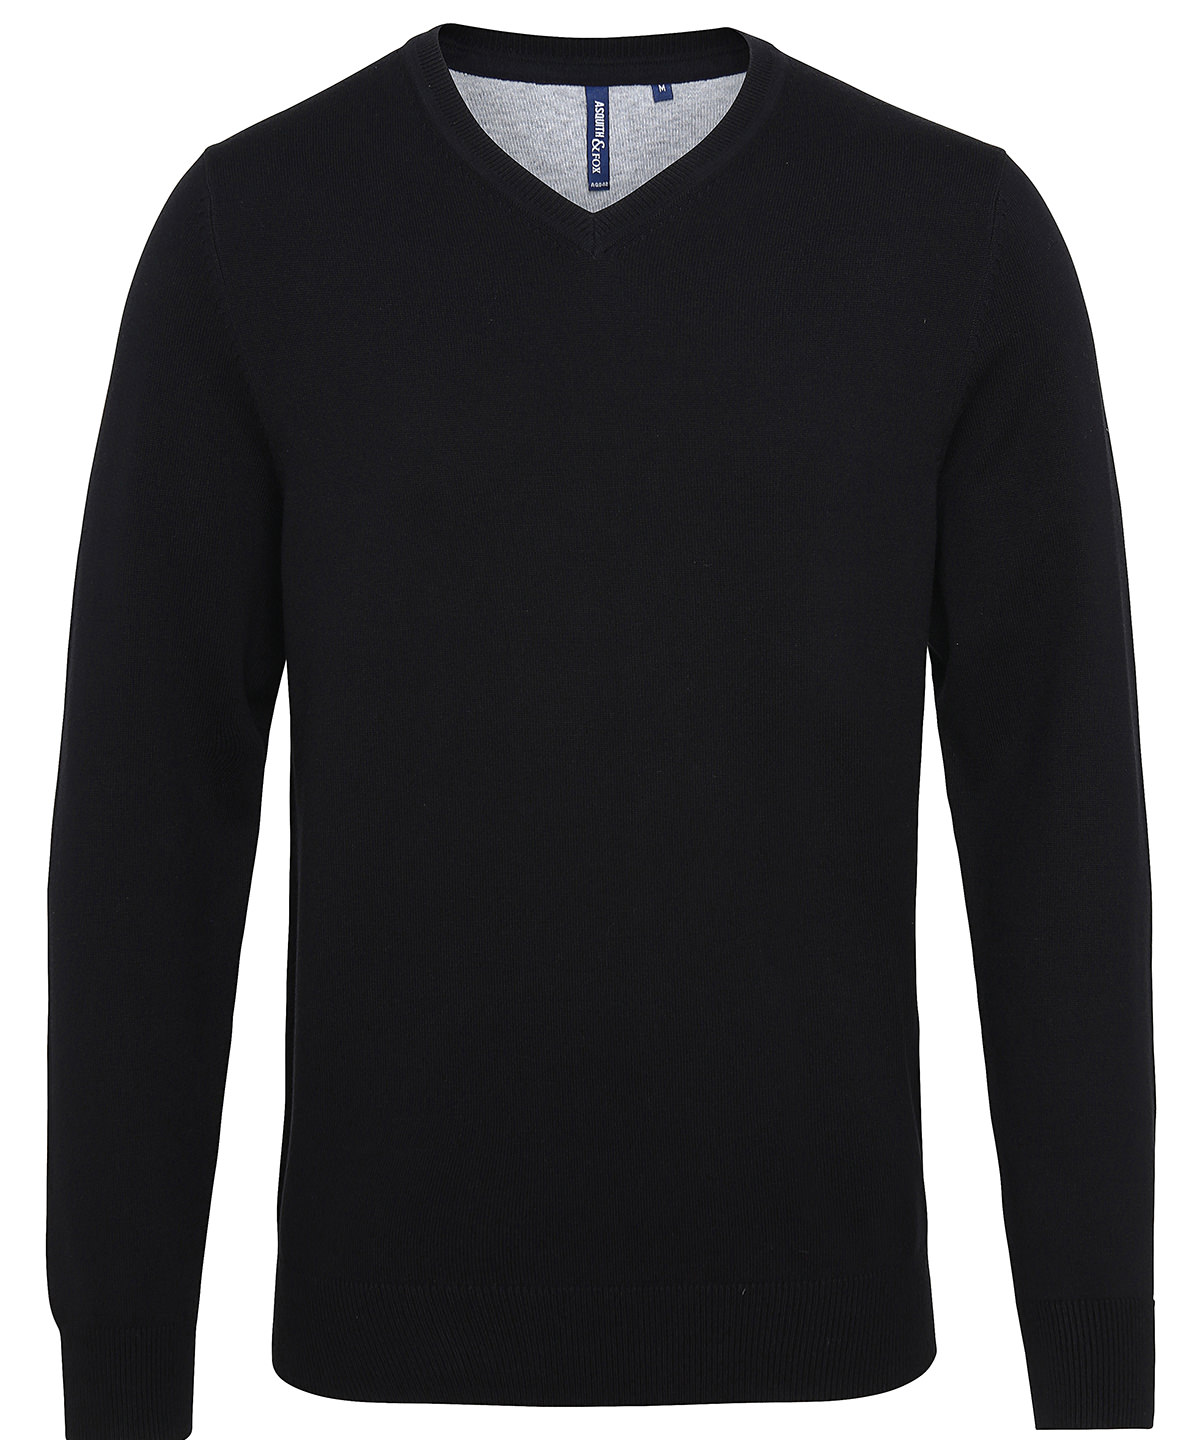 Mens Cotton Blend V-Neck Sweater Black Size 2XLarge